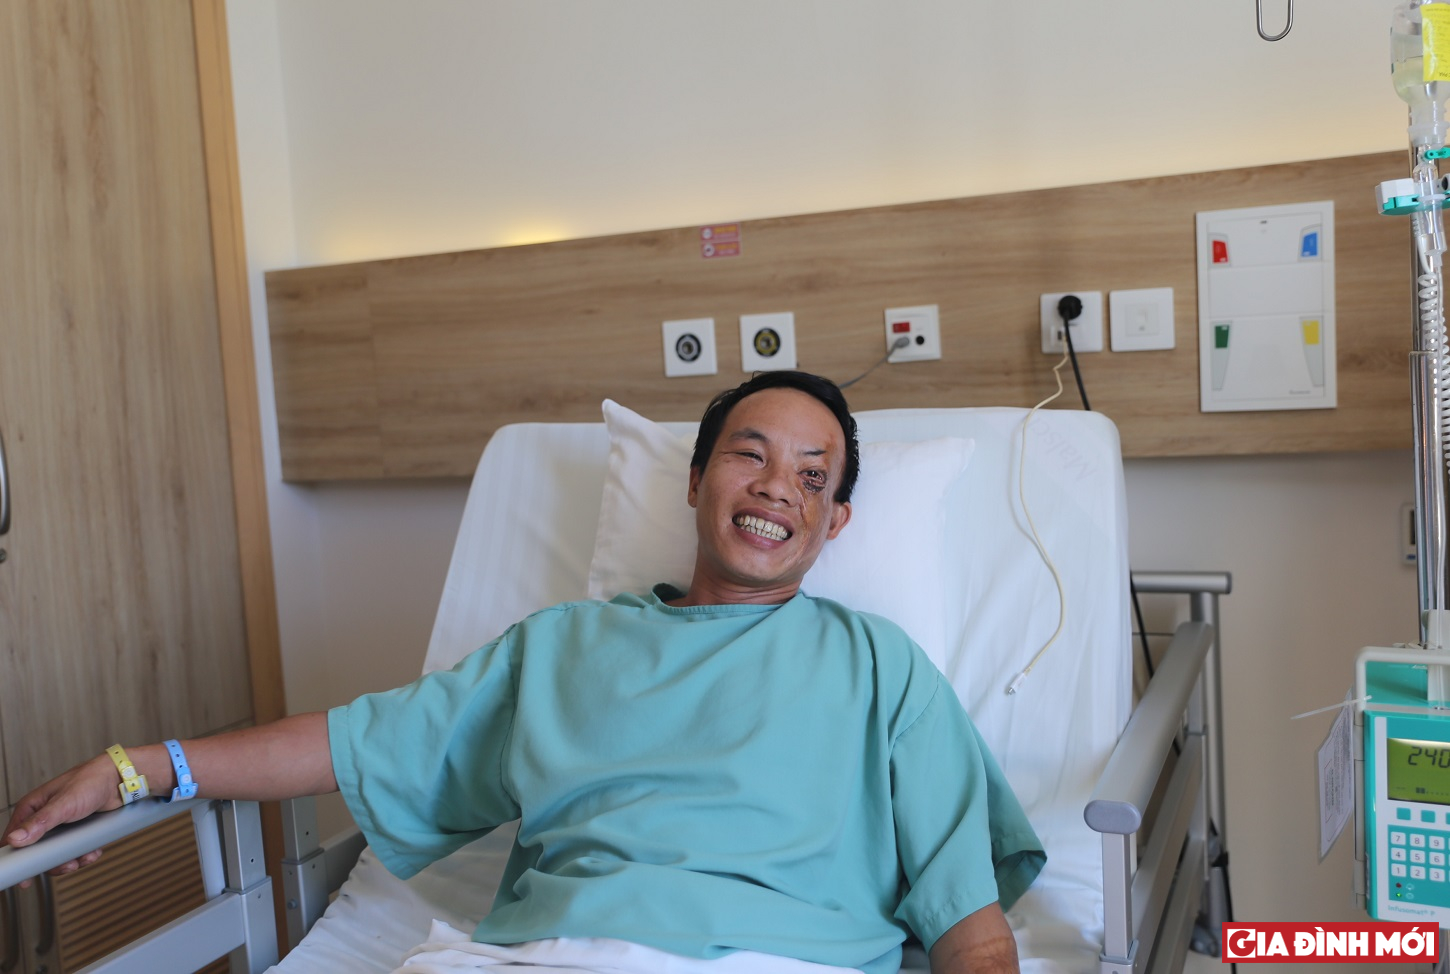 Anh Đức với niềm vui được các bác sĩ Vinmec Nha Trang đã phẫu thuật thành công chữa trị cả đôi chân và đôi mắt.